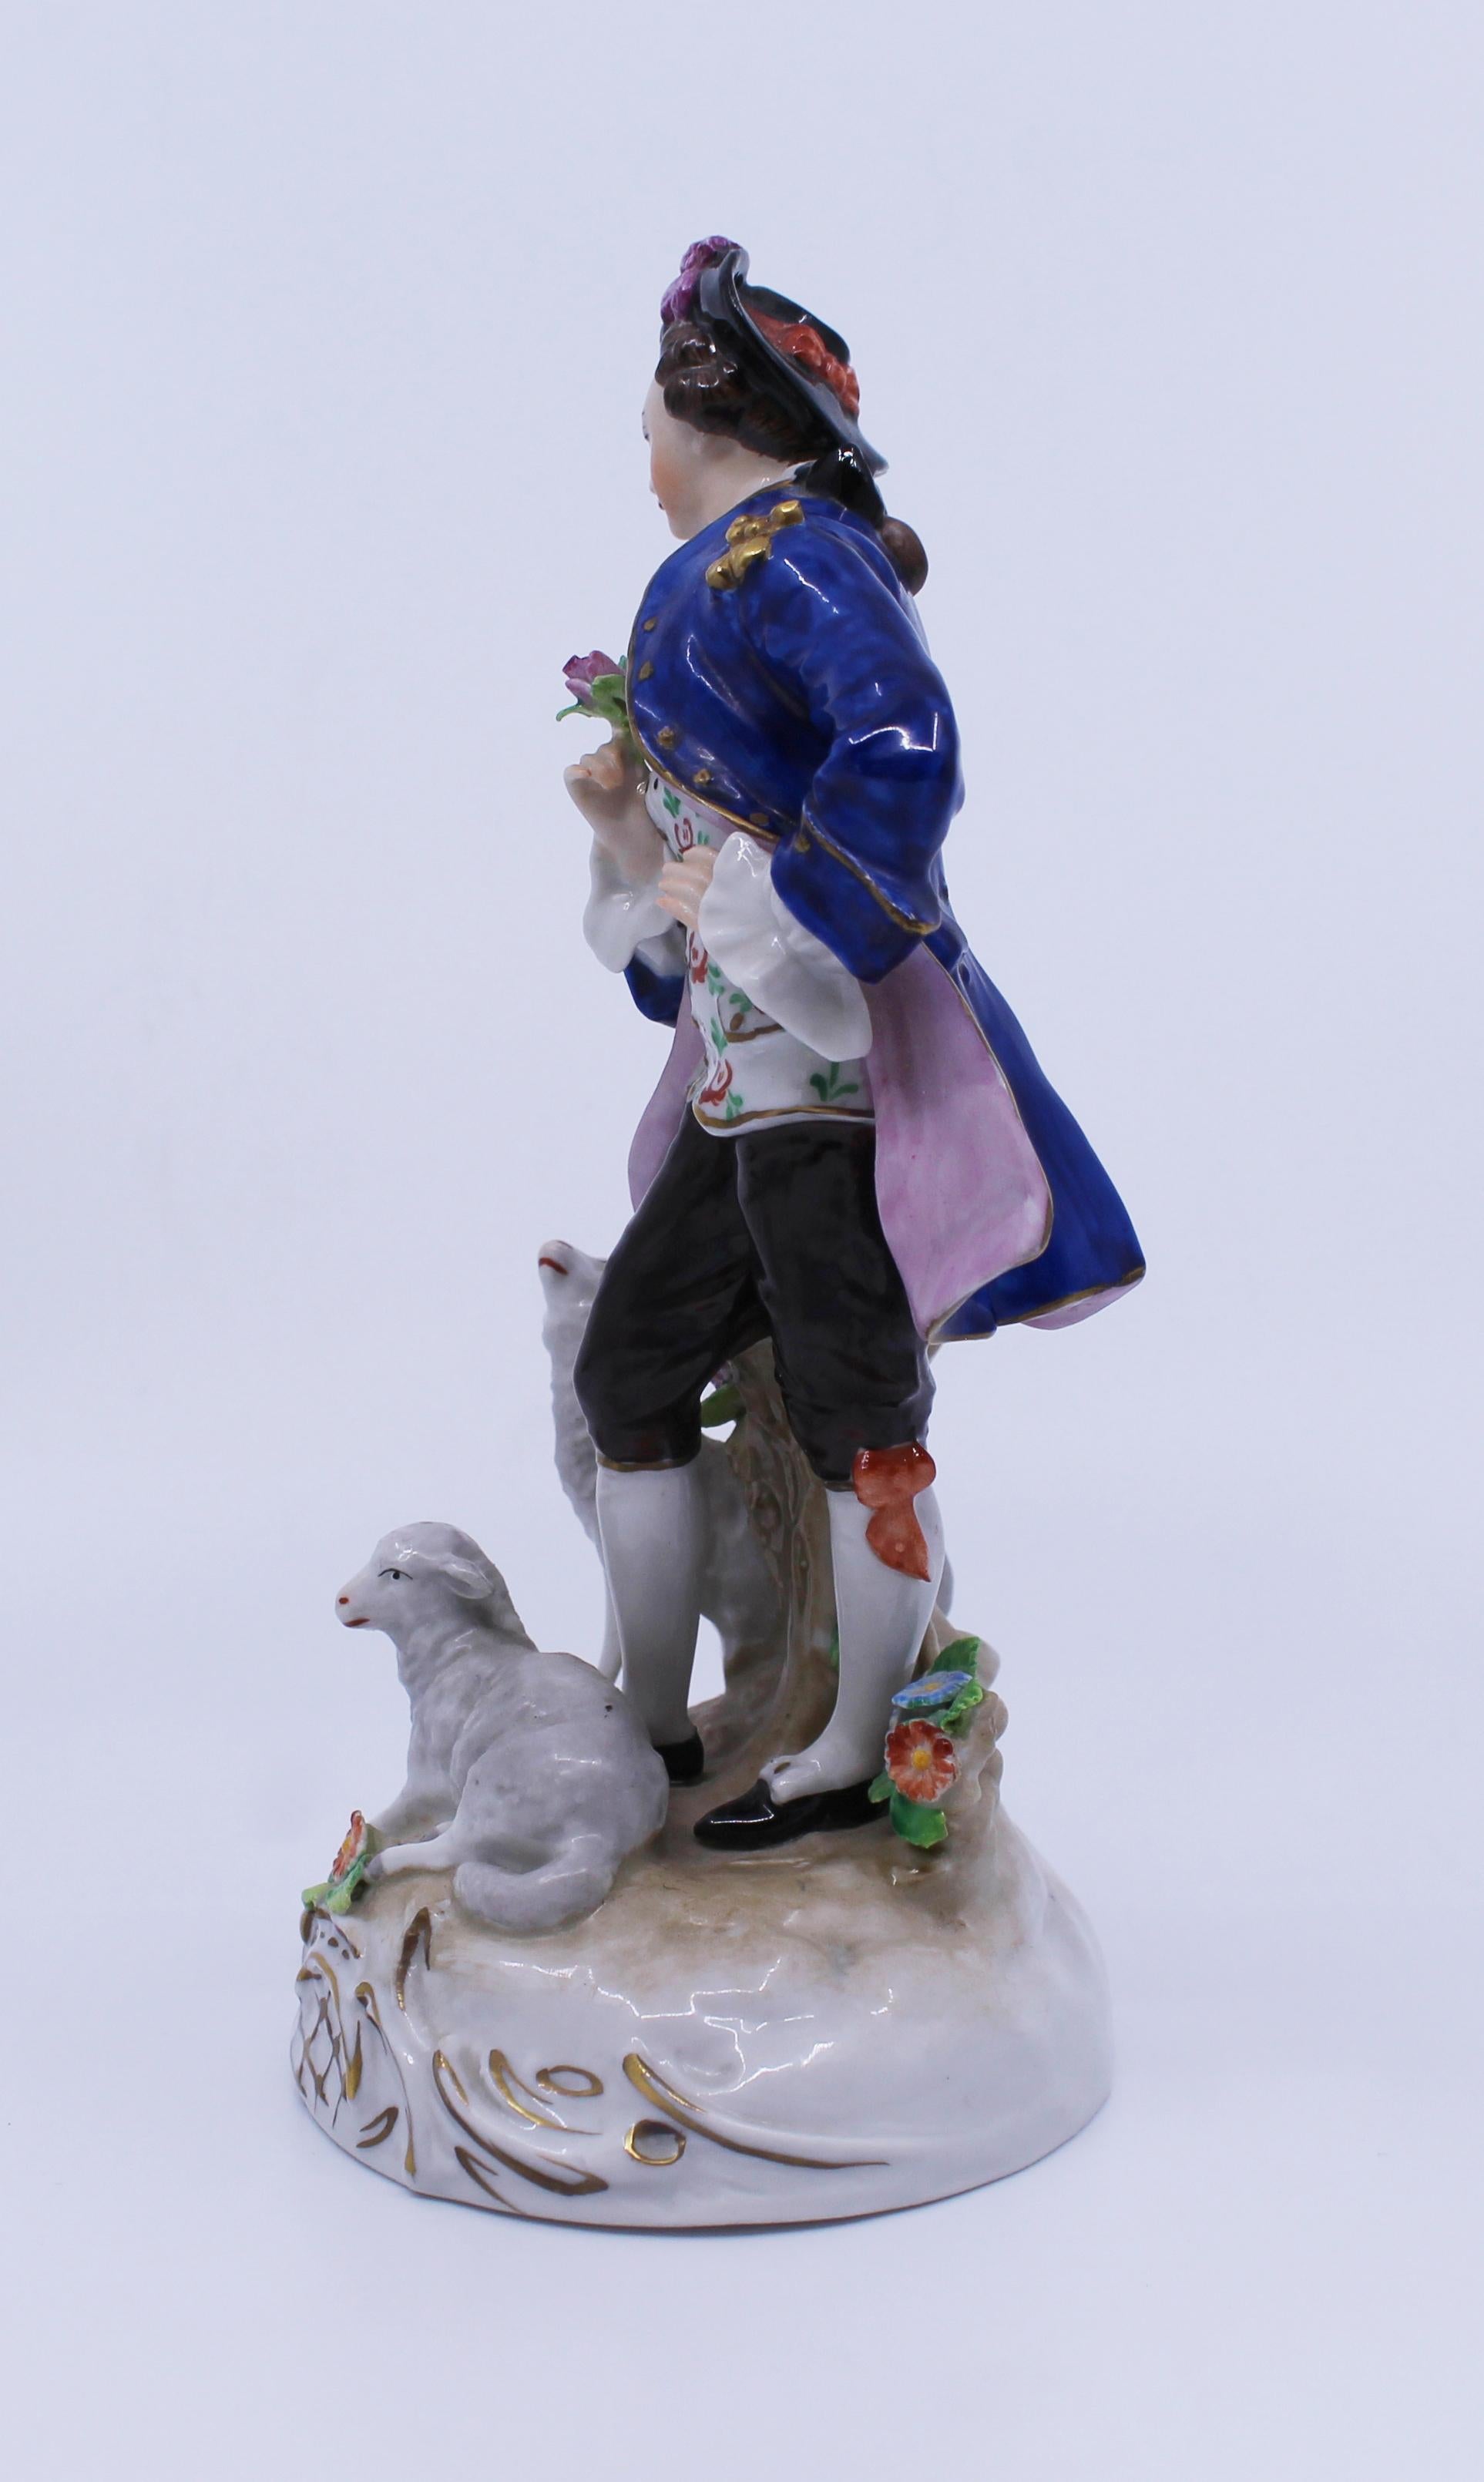 German Sitzendorf Porcelain Nobleman with Lambs Figurine